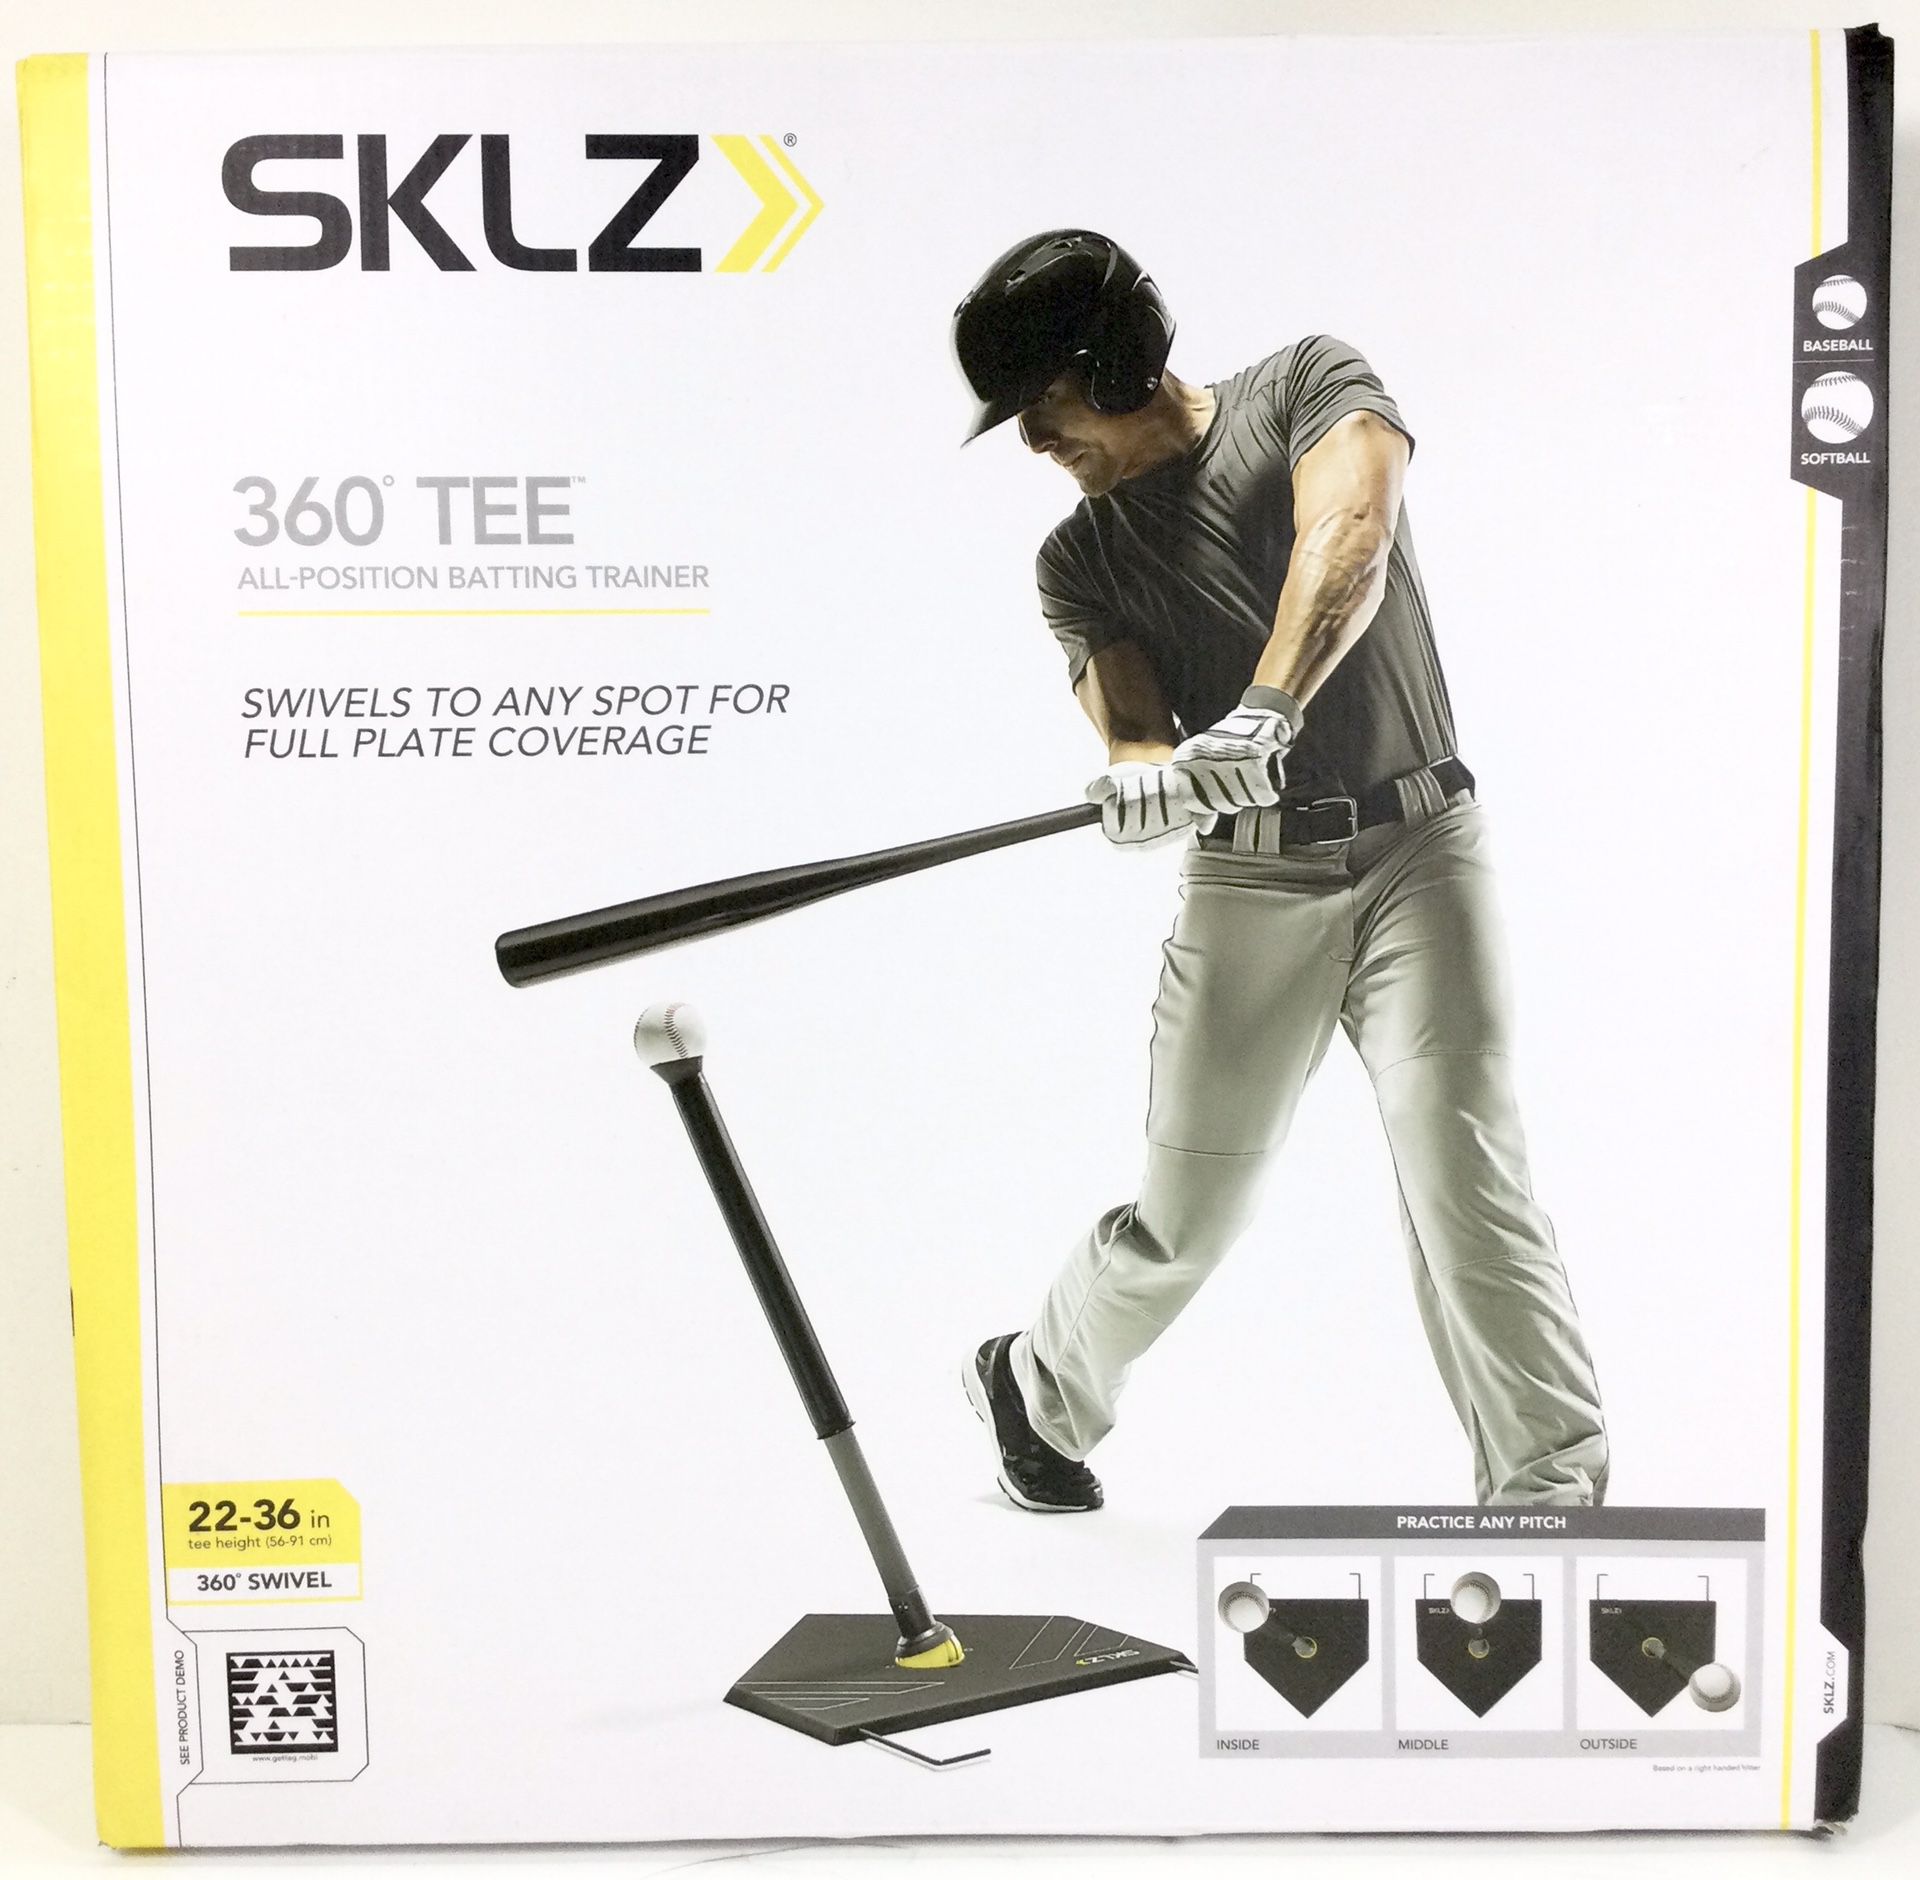 *NEW* SKLZ 360 Degree Tee All Position Baseball Batting Trainer